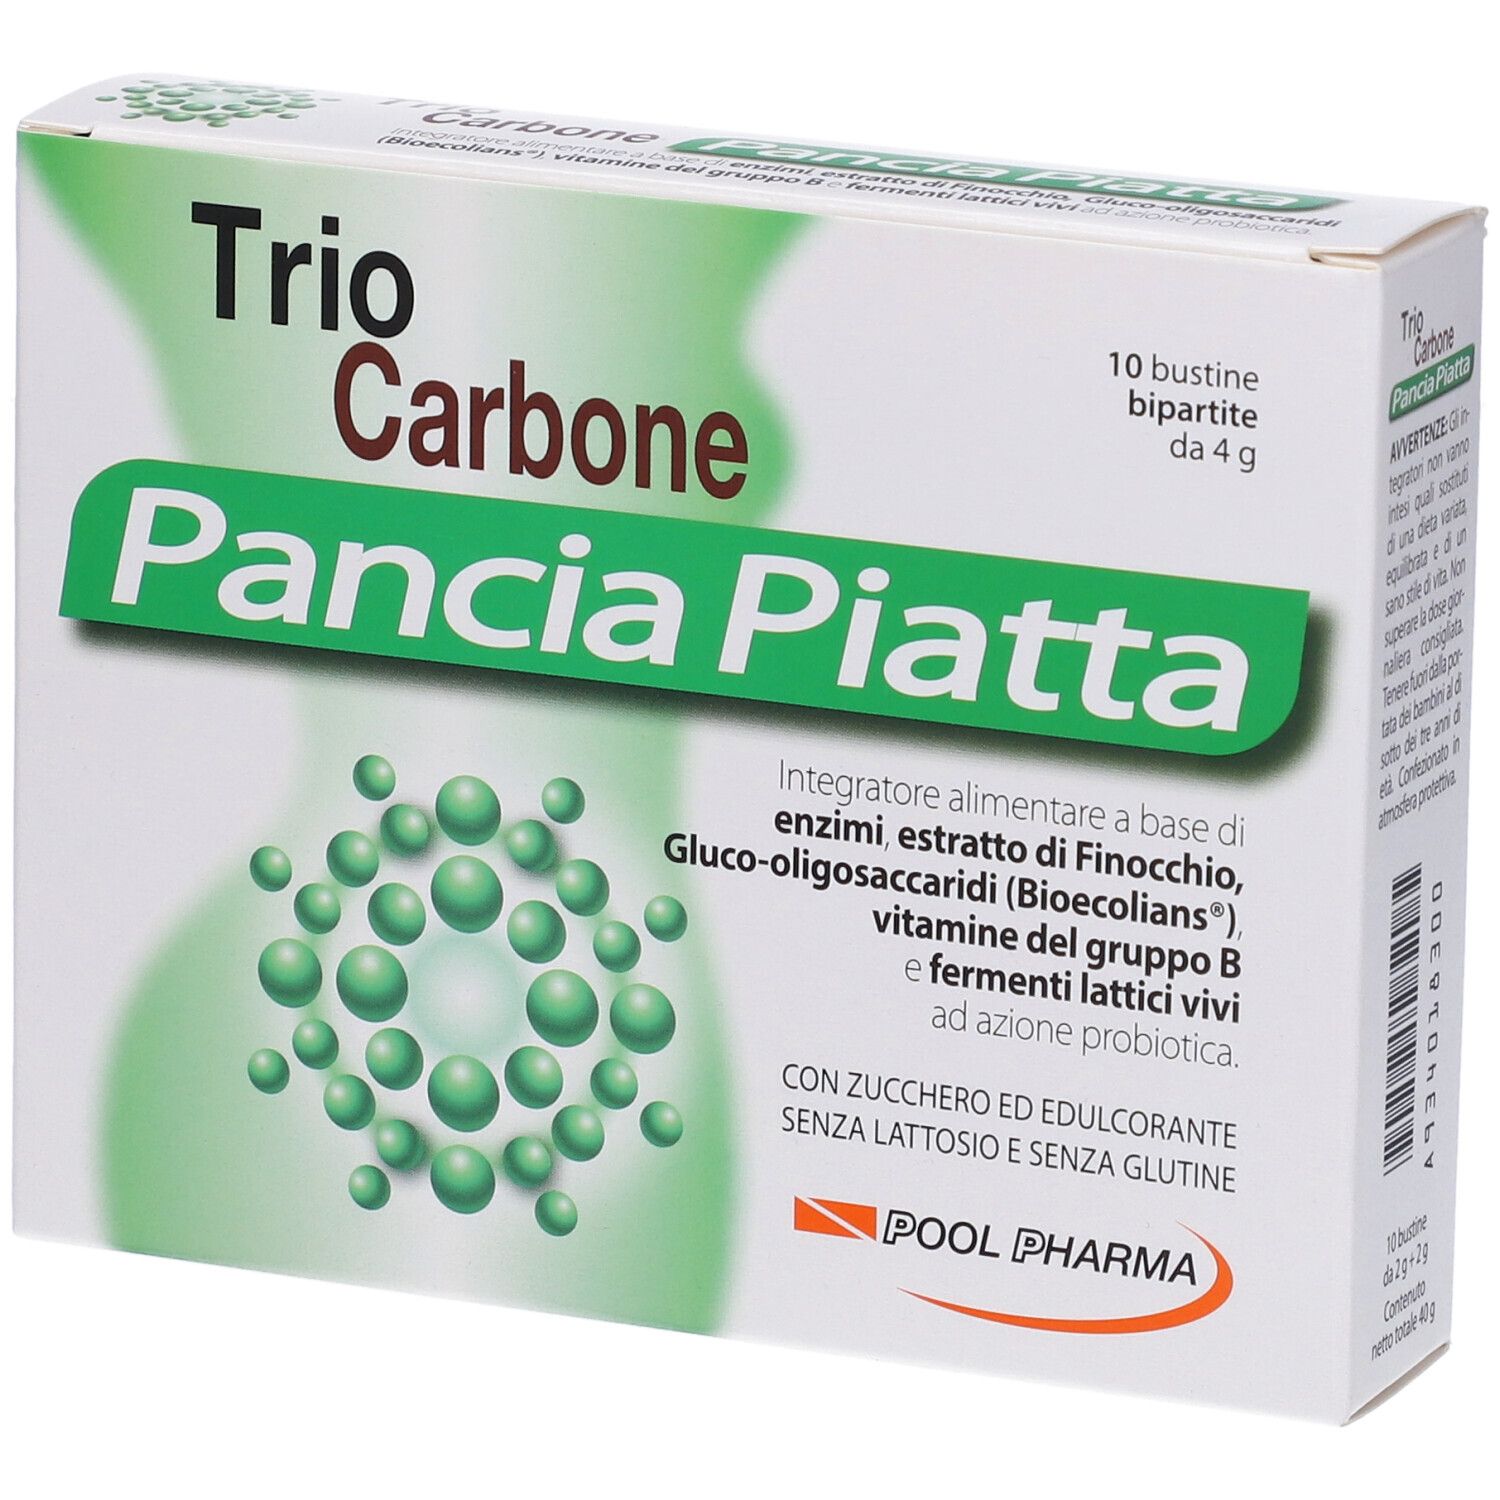 Image of Trio Carbone Pancia Piatta